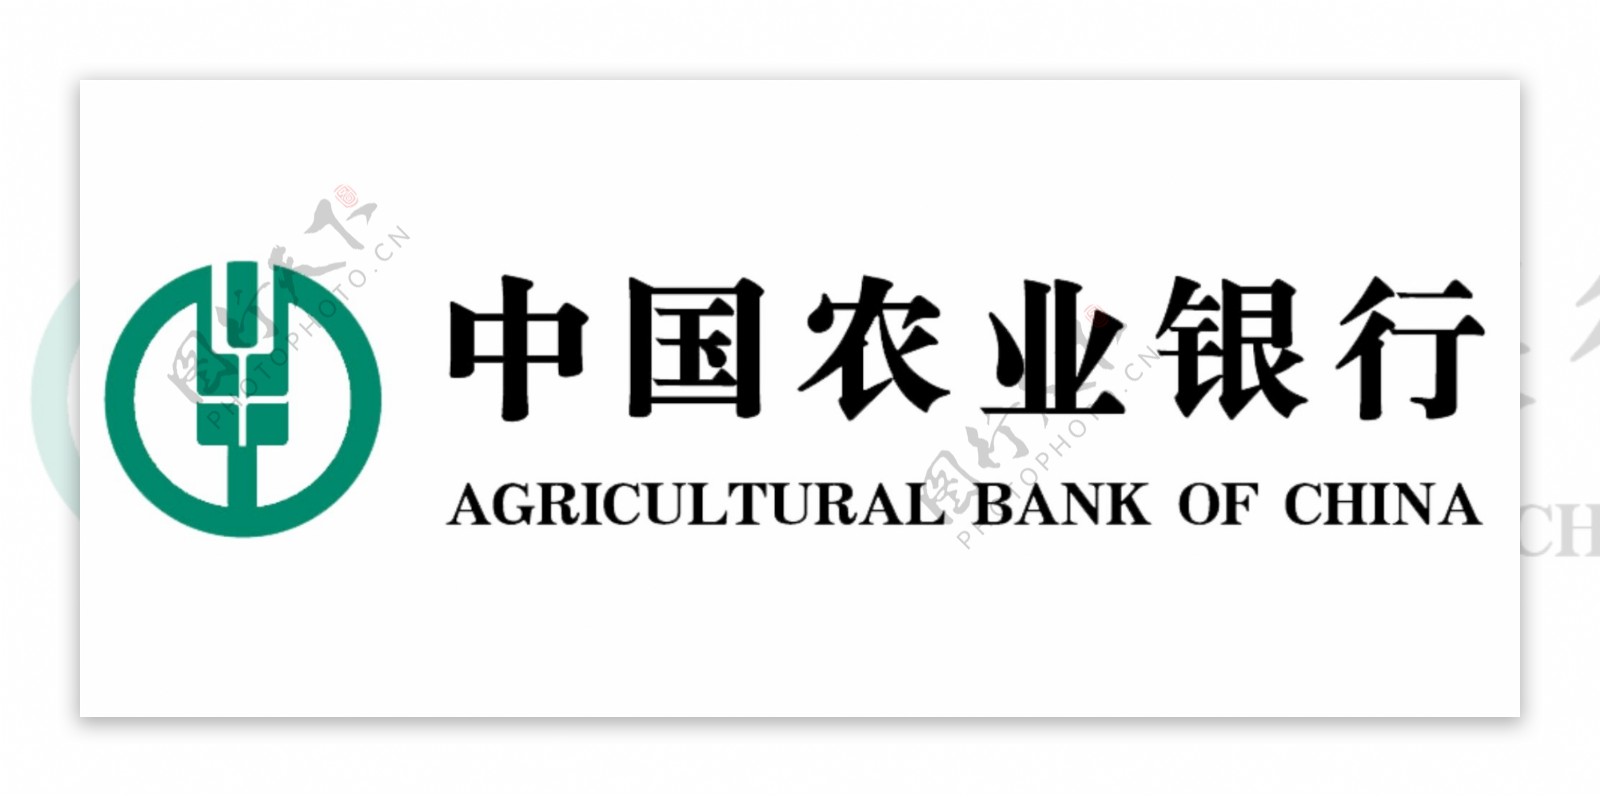 中国农业银行logo图片